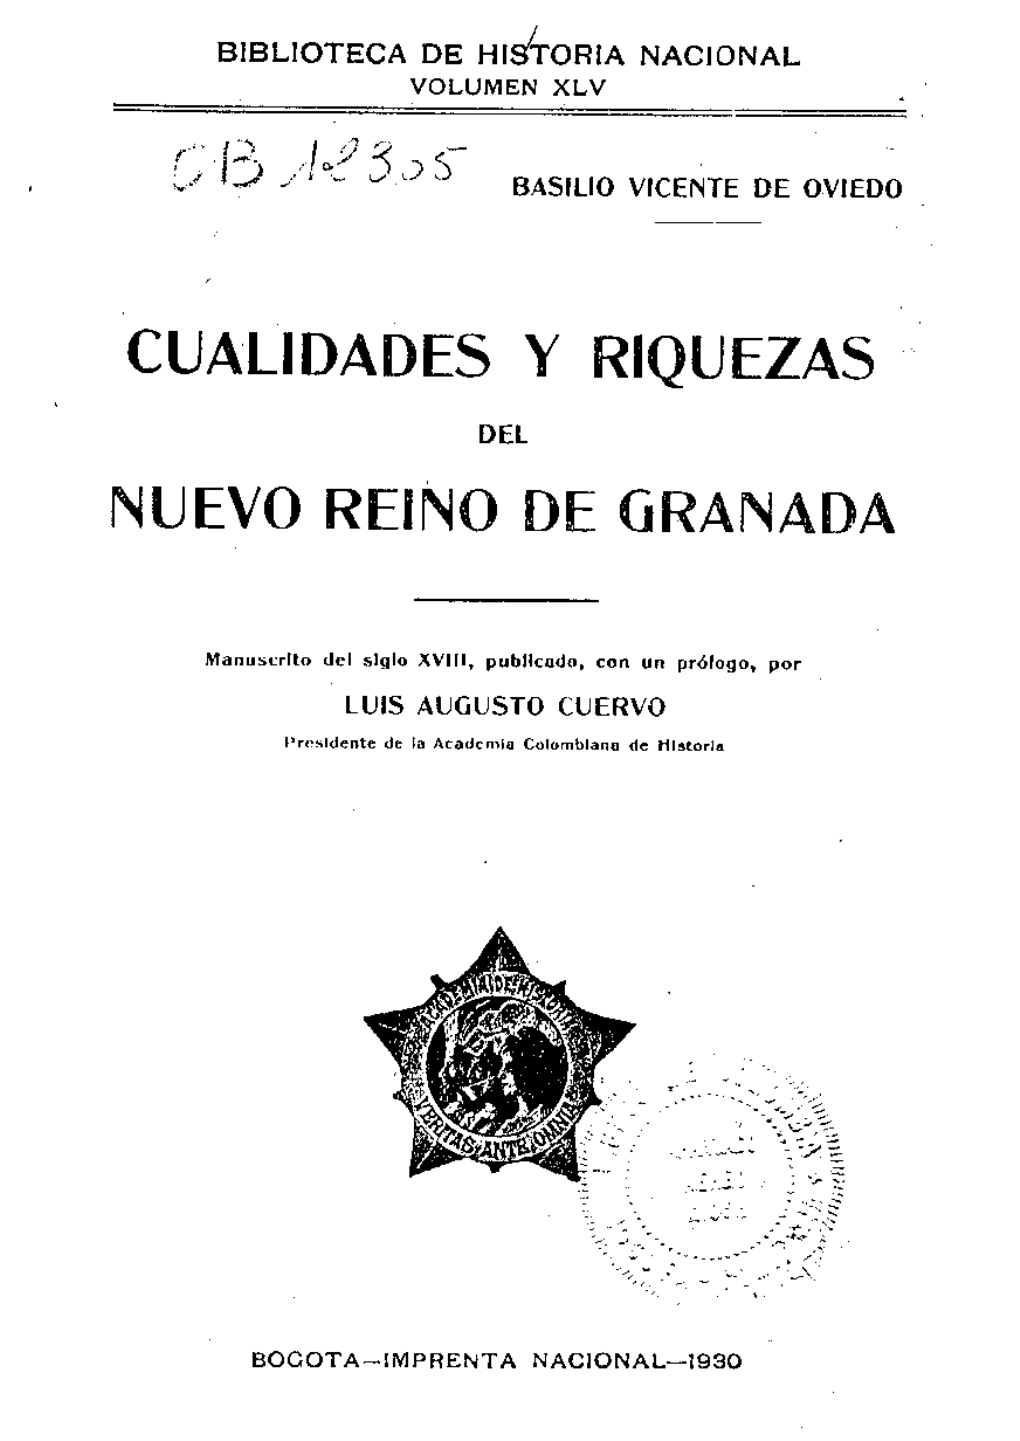 Cualidades Y Riquezas Muevo Reino De Granada